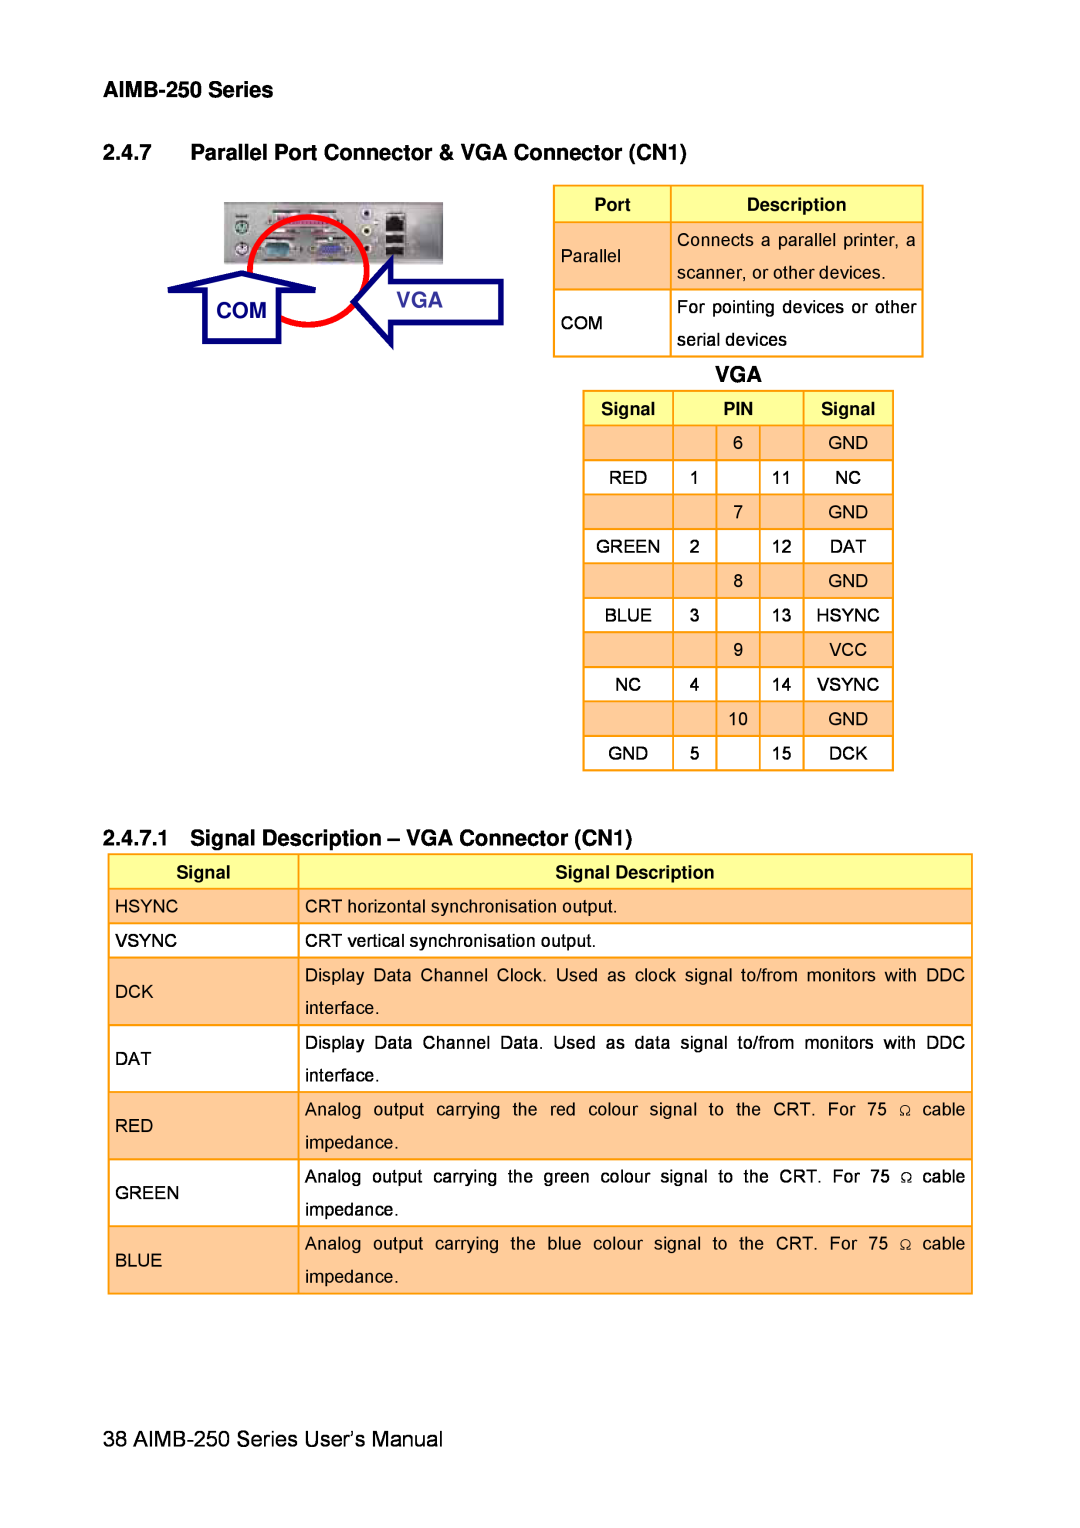 Advantech user manual AIMB-250 Series 2.4.7 Parallel Port Connector & VGA Connector CN1, Comvga, Description, Signal 